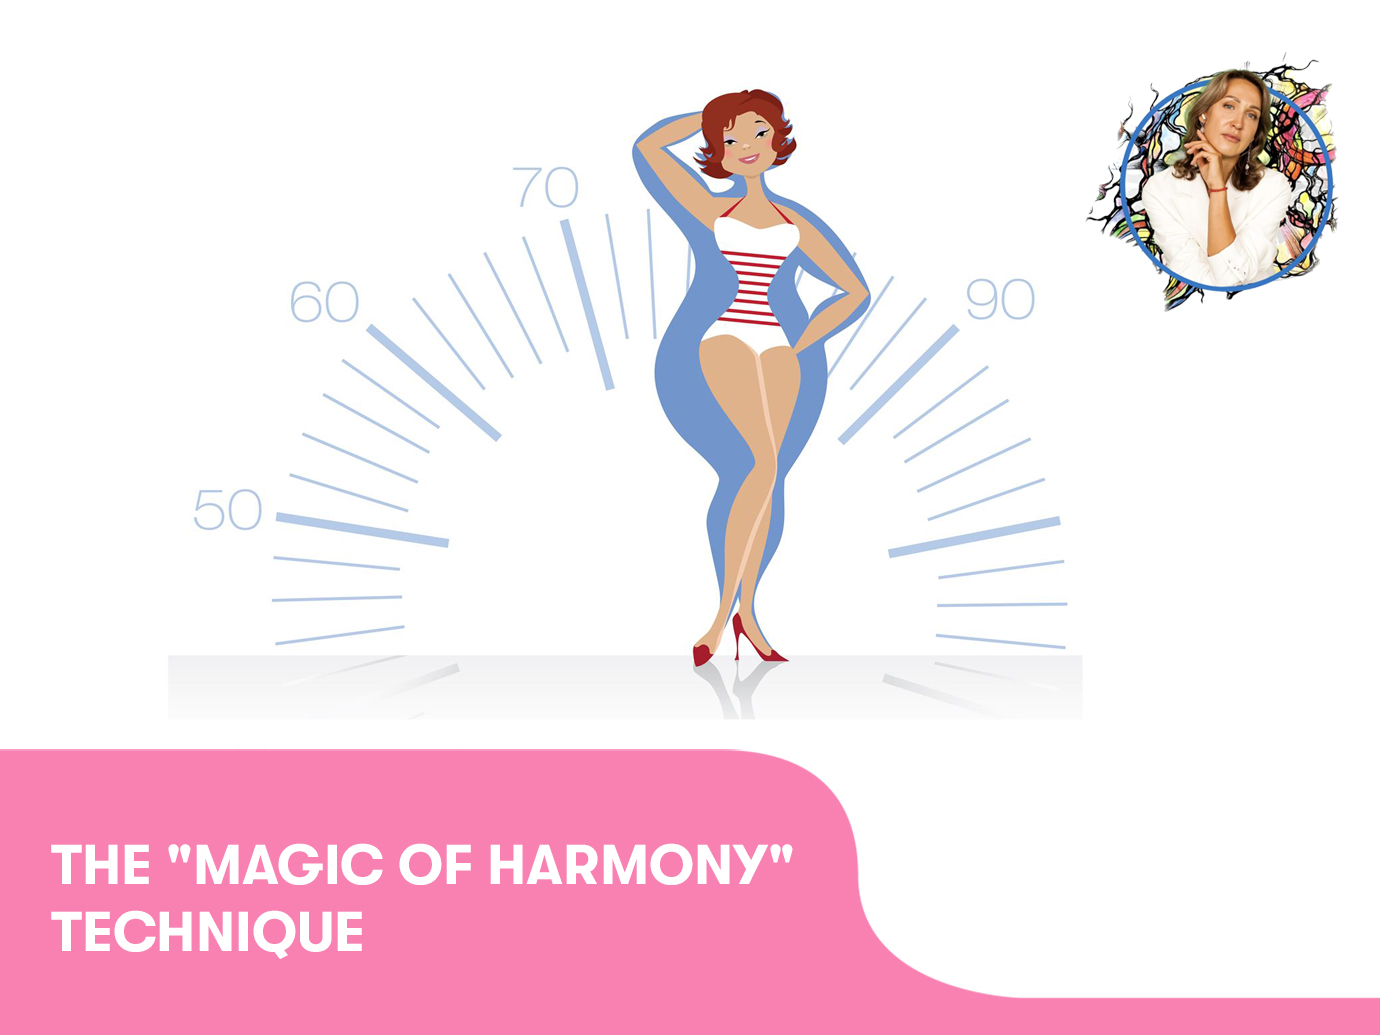 The “Magic of harmony“ technique